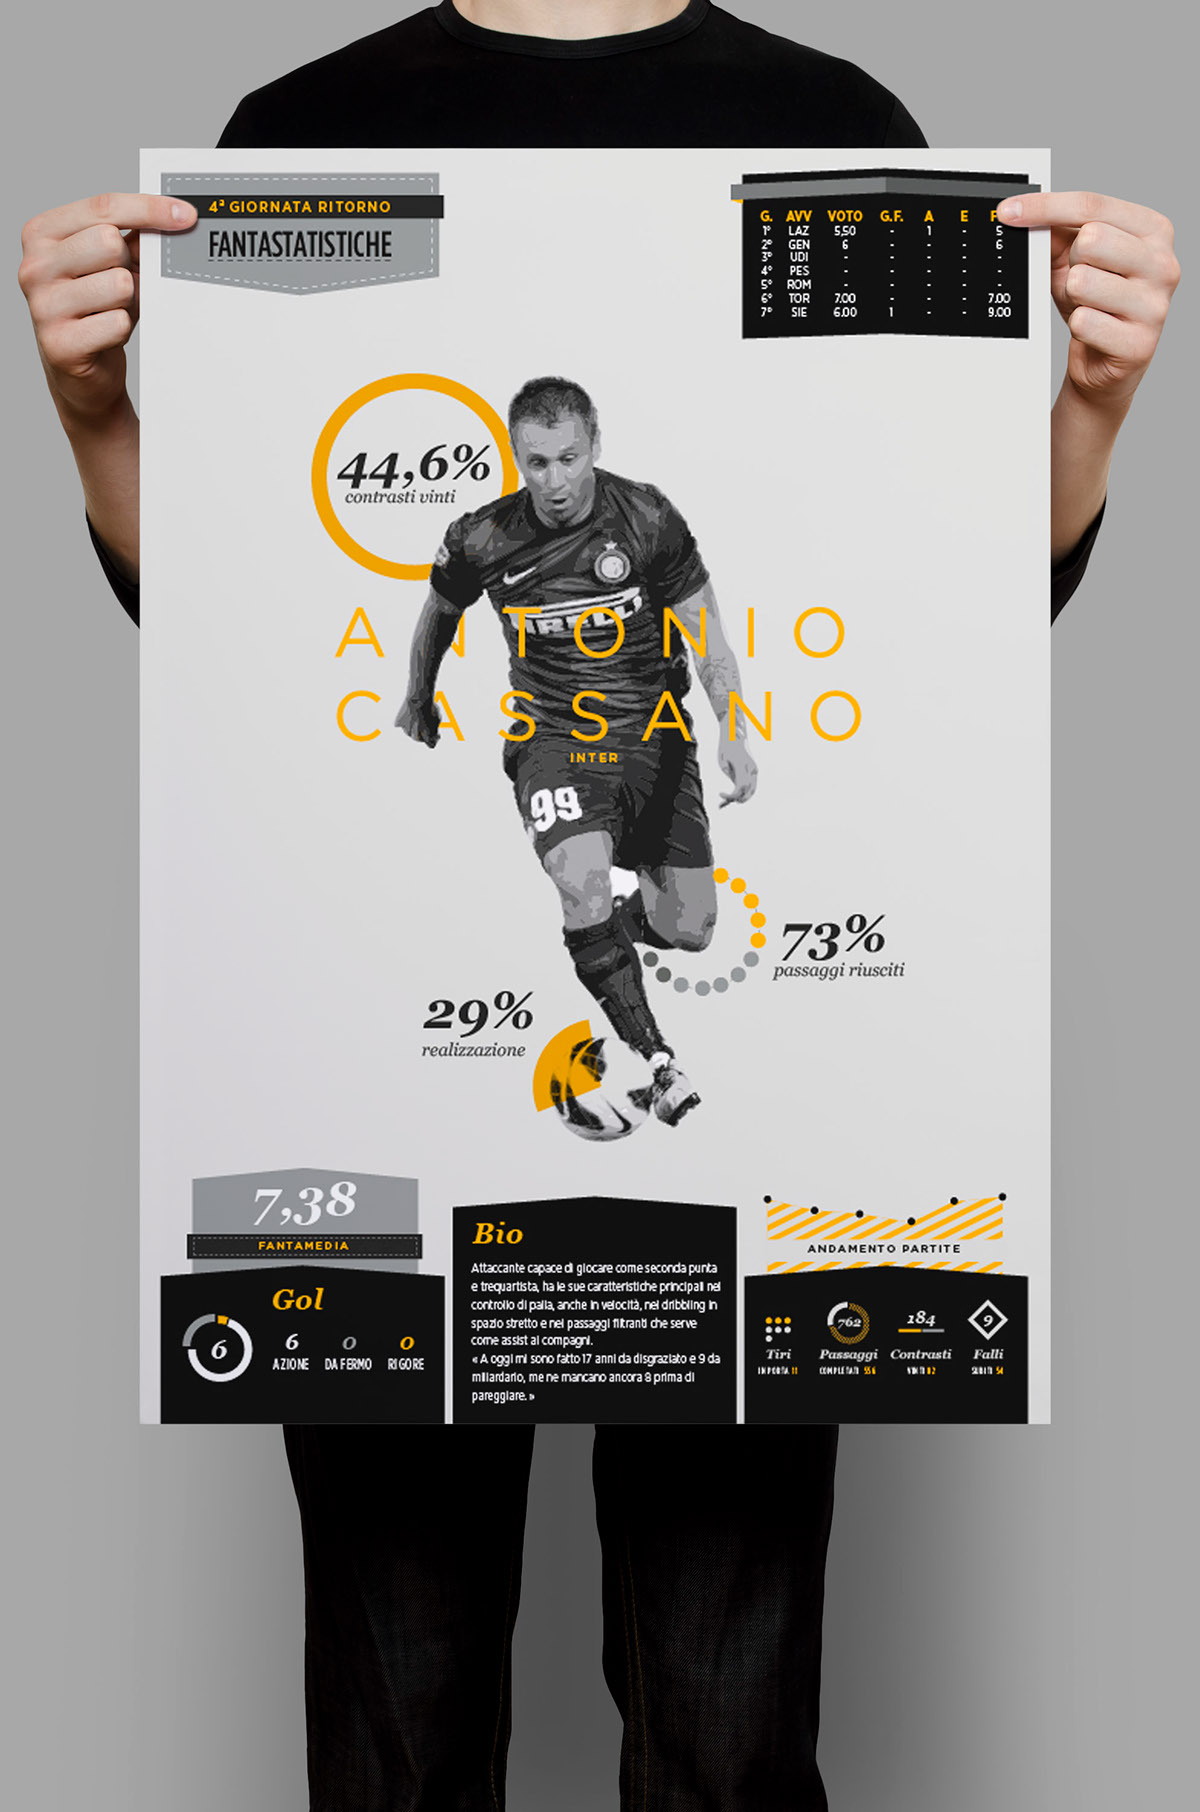 infographic football soccer calcio SerieA Pirlo fantacalcio statistiche statistics infografica Dati campionato